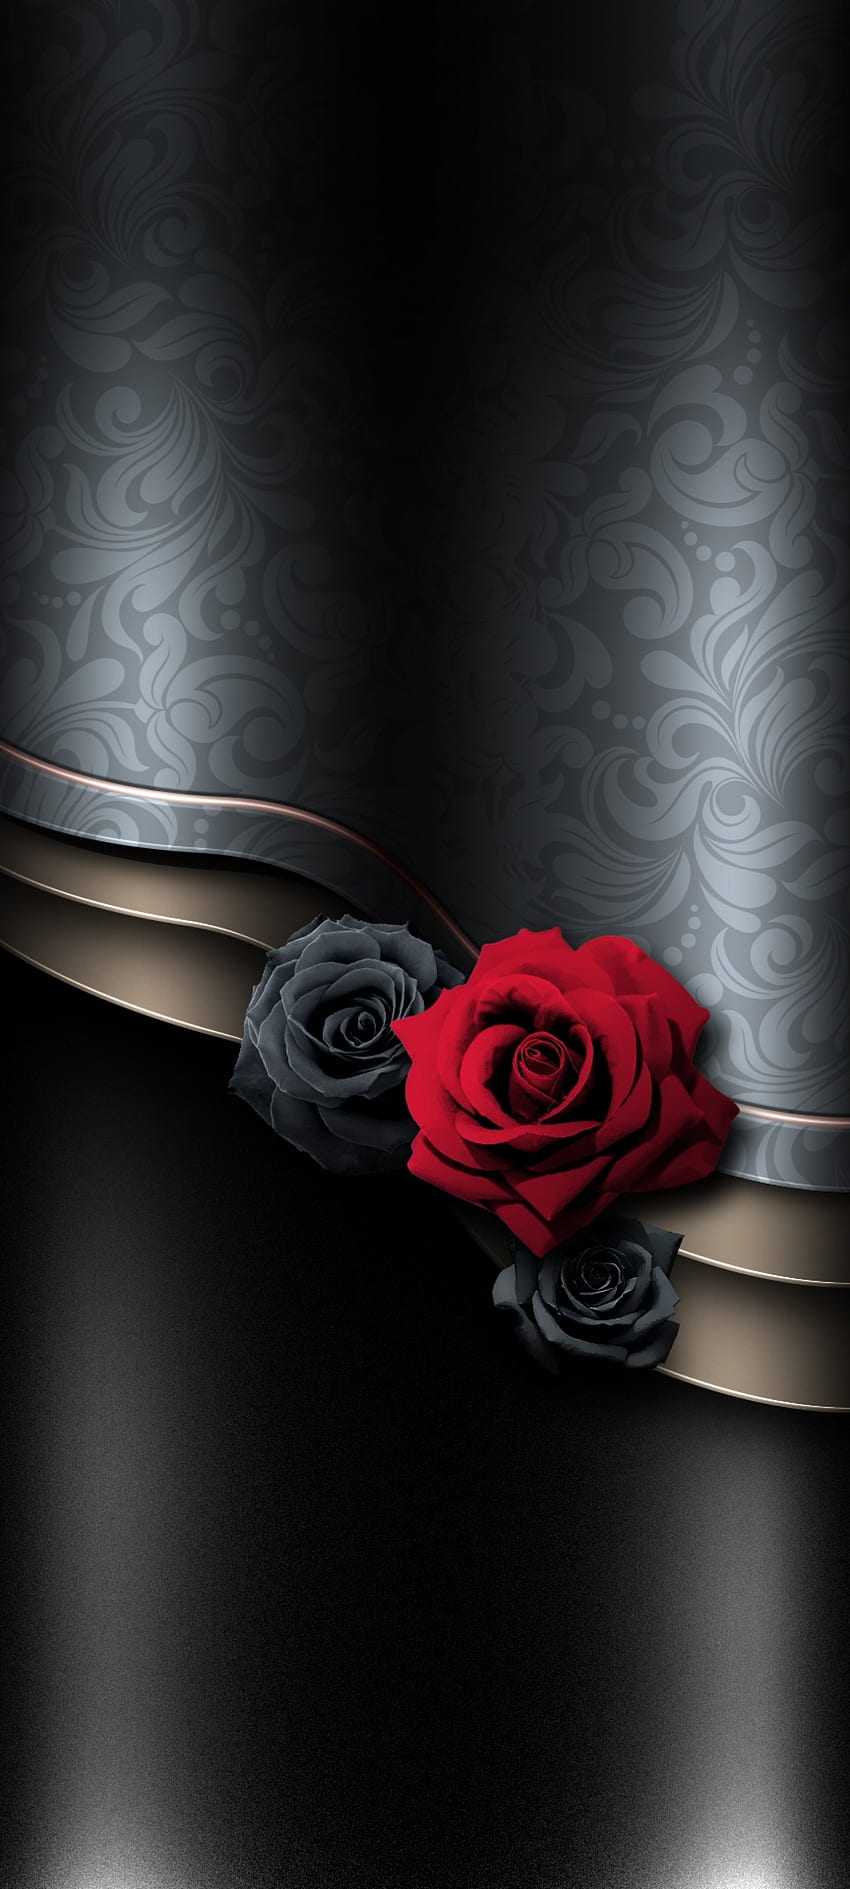 Mawar mewah antik, mawar teh hibrida, merah, bunga, pastel, premium, hitam wallpaper ponsel HD